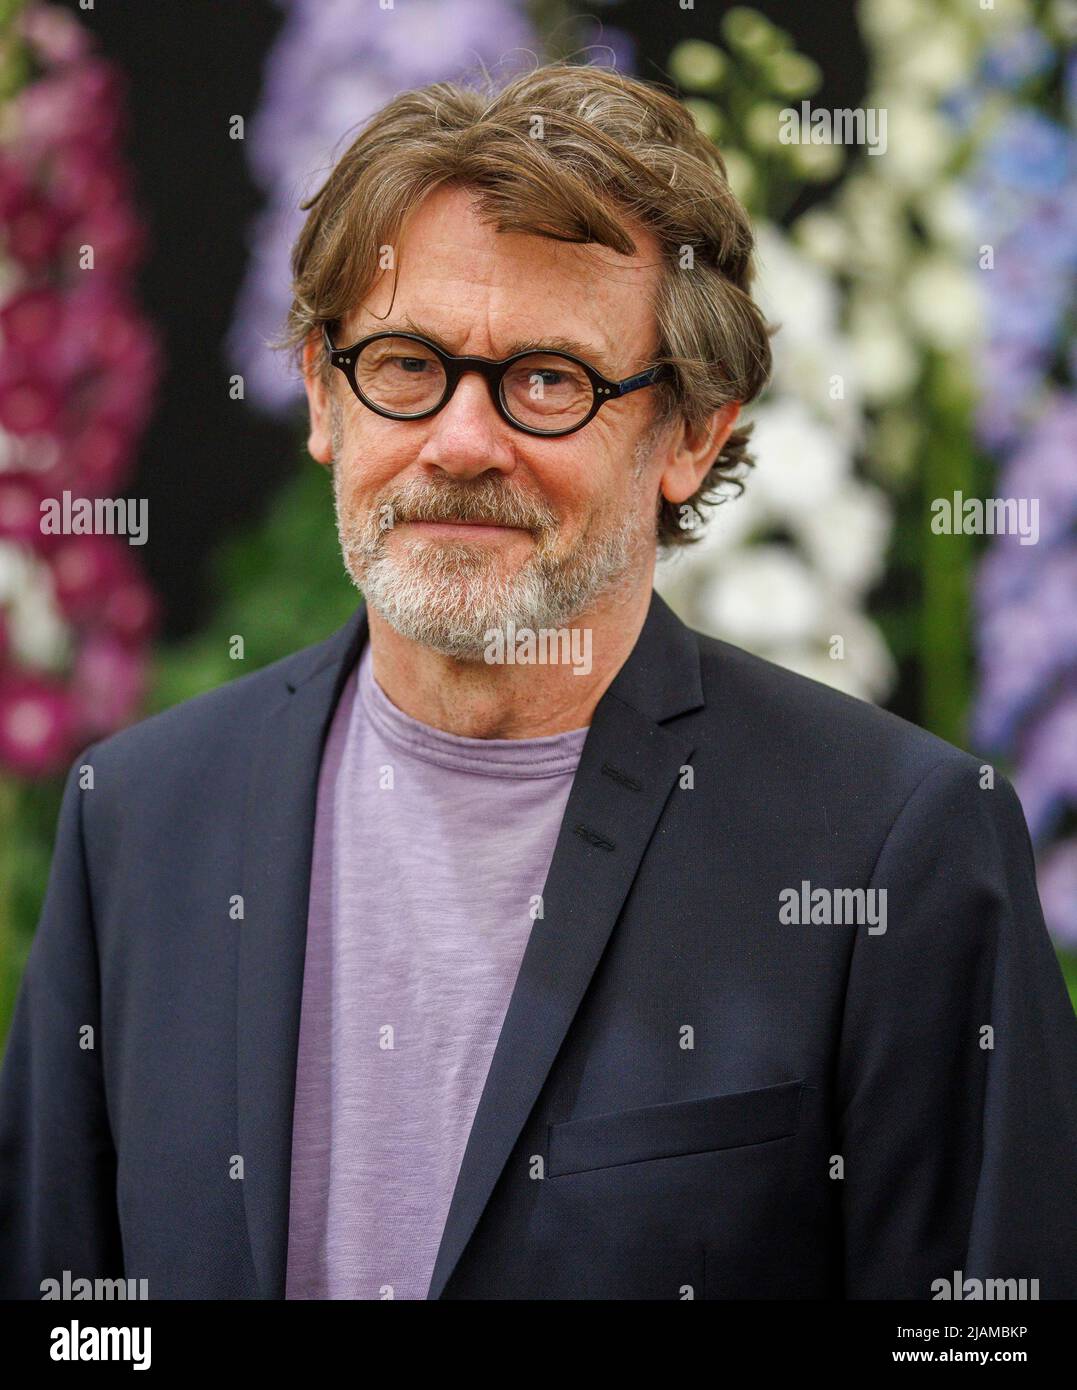 Nigel Slater, écrivain, journaliste et radiodiffuseur, au RHS Chelsea Flower Show. Banque D'Images